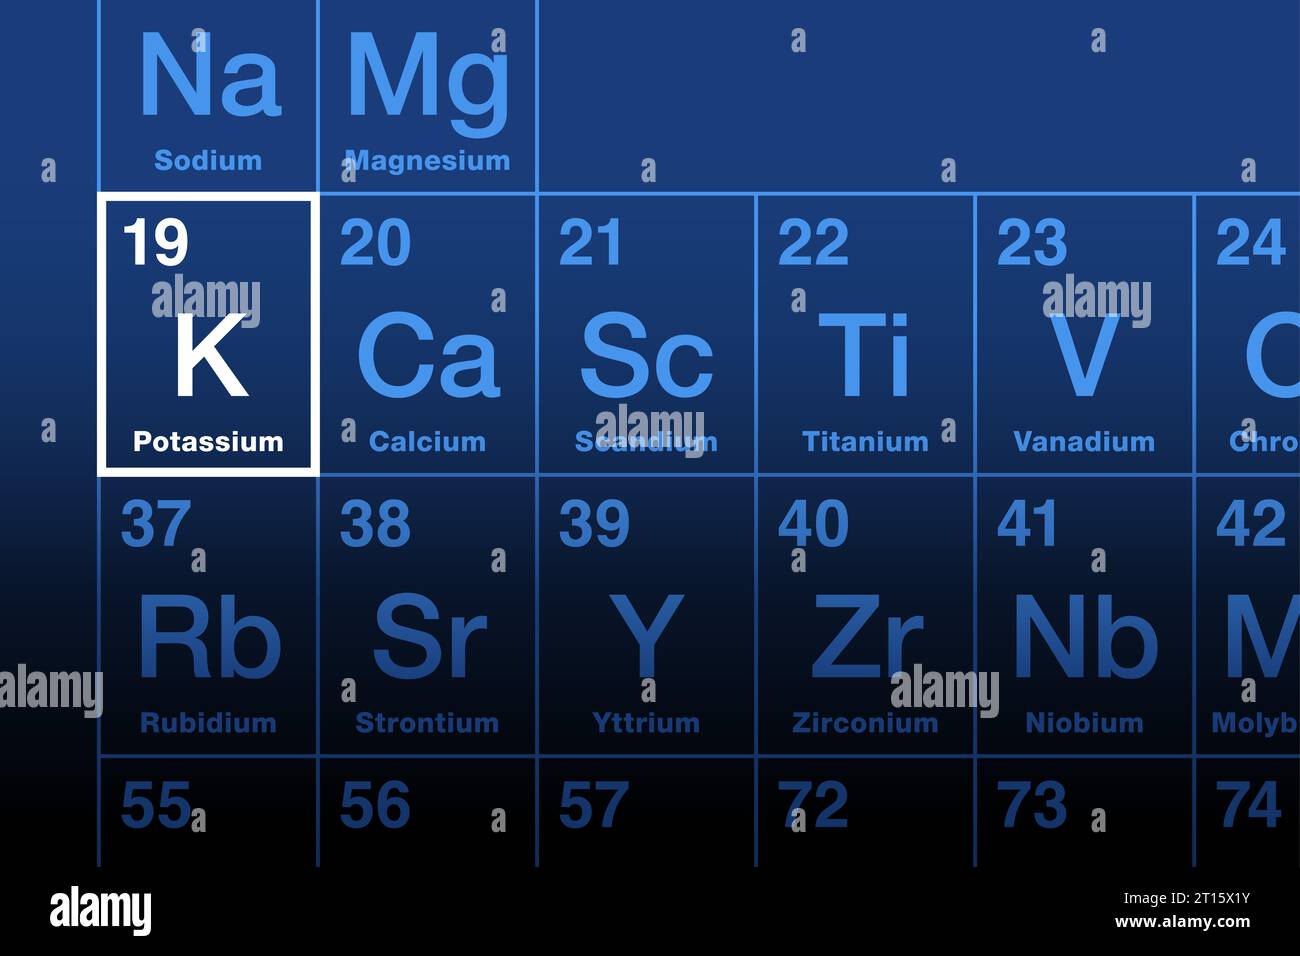 L'élément potassium sur le tableau périodique. Métal alcalin dont le symbole d'élément K provient du kalium et dont le numéro atomique est 19. Essentiel pour toutes les cellules vivantes. Banque D'Images